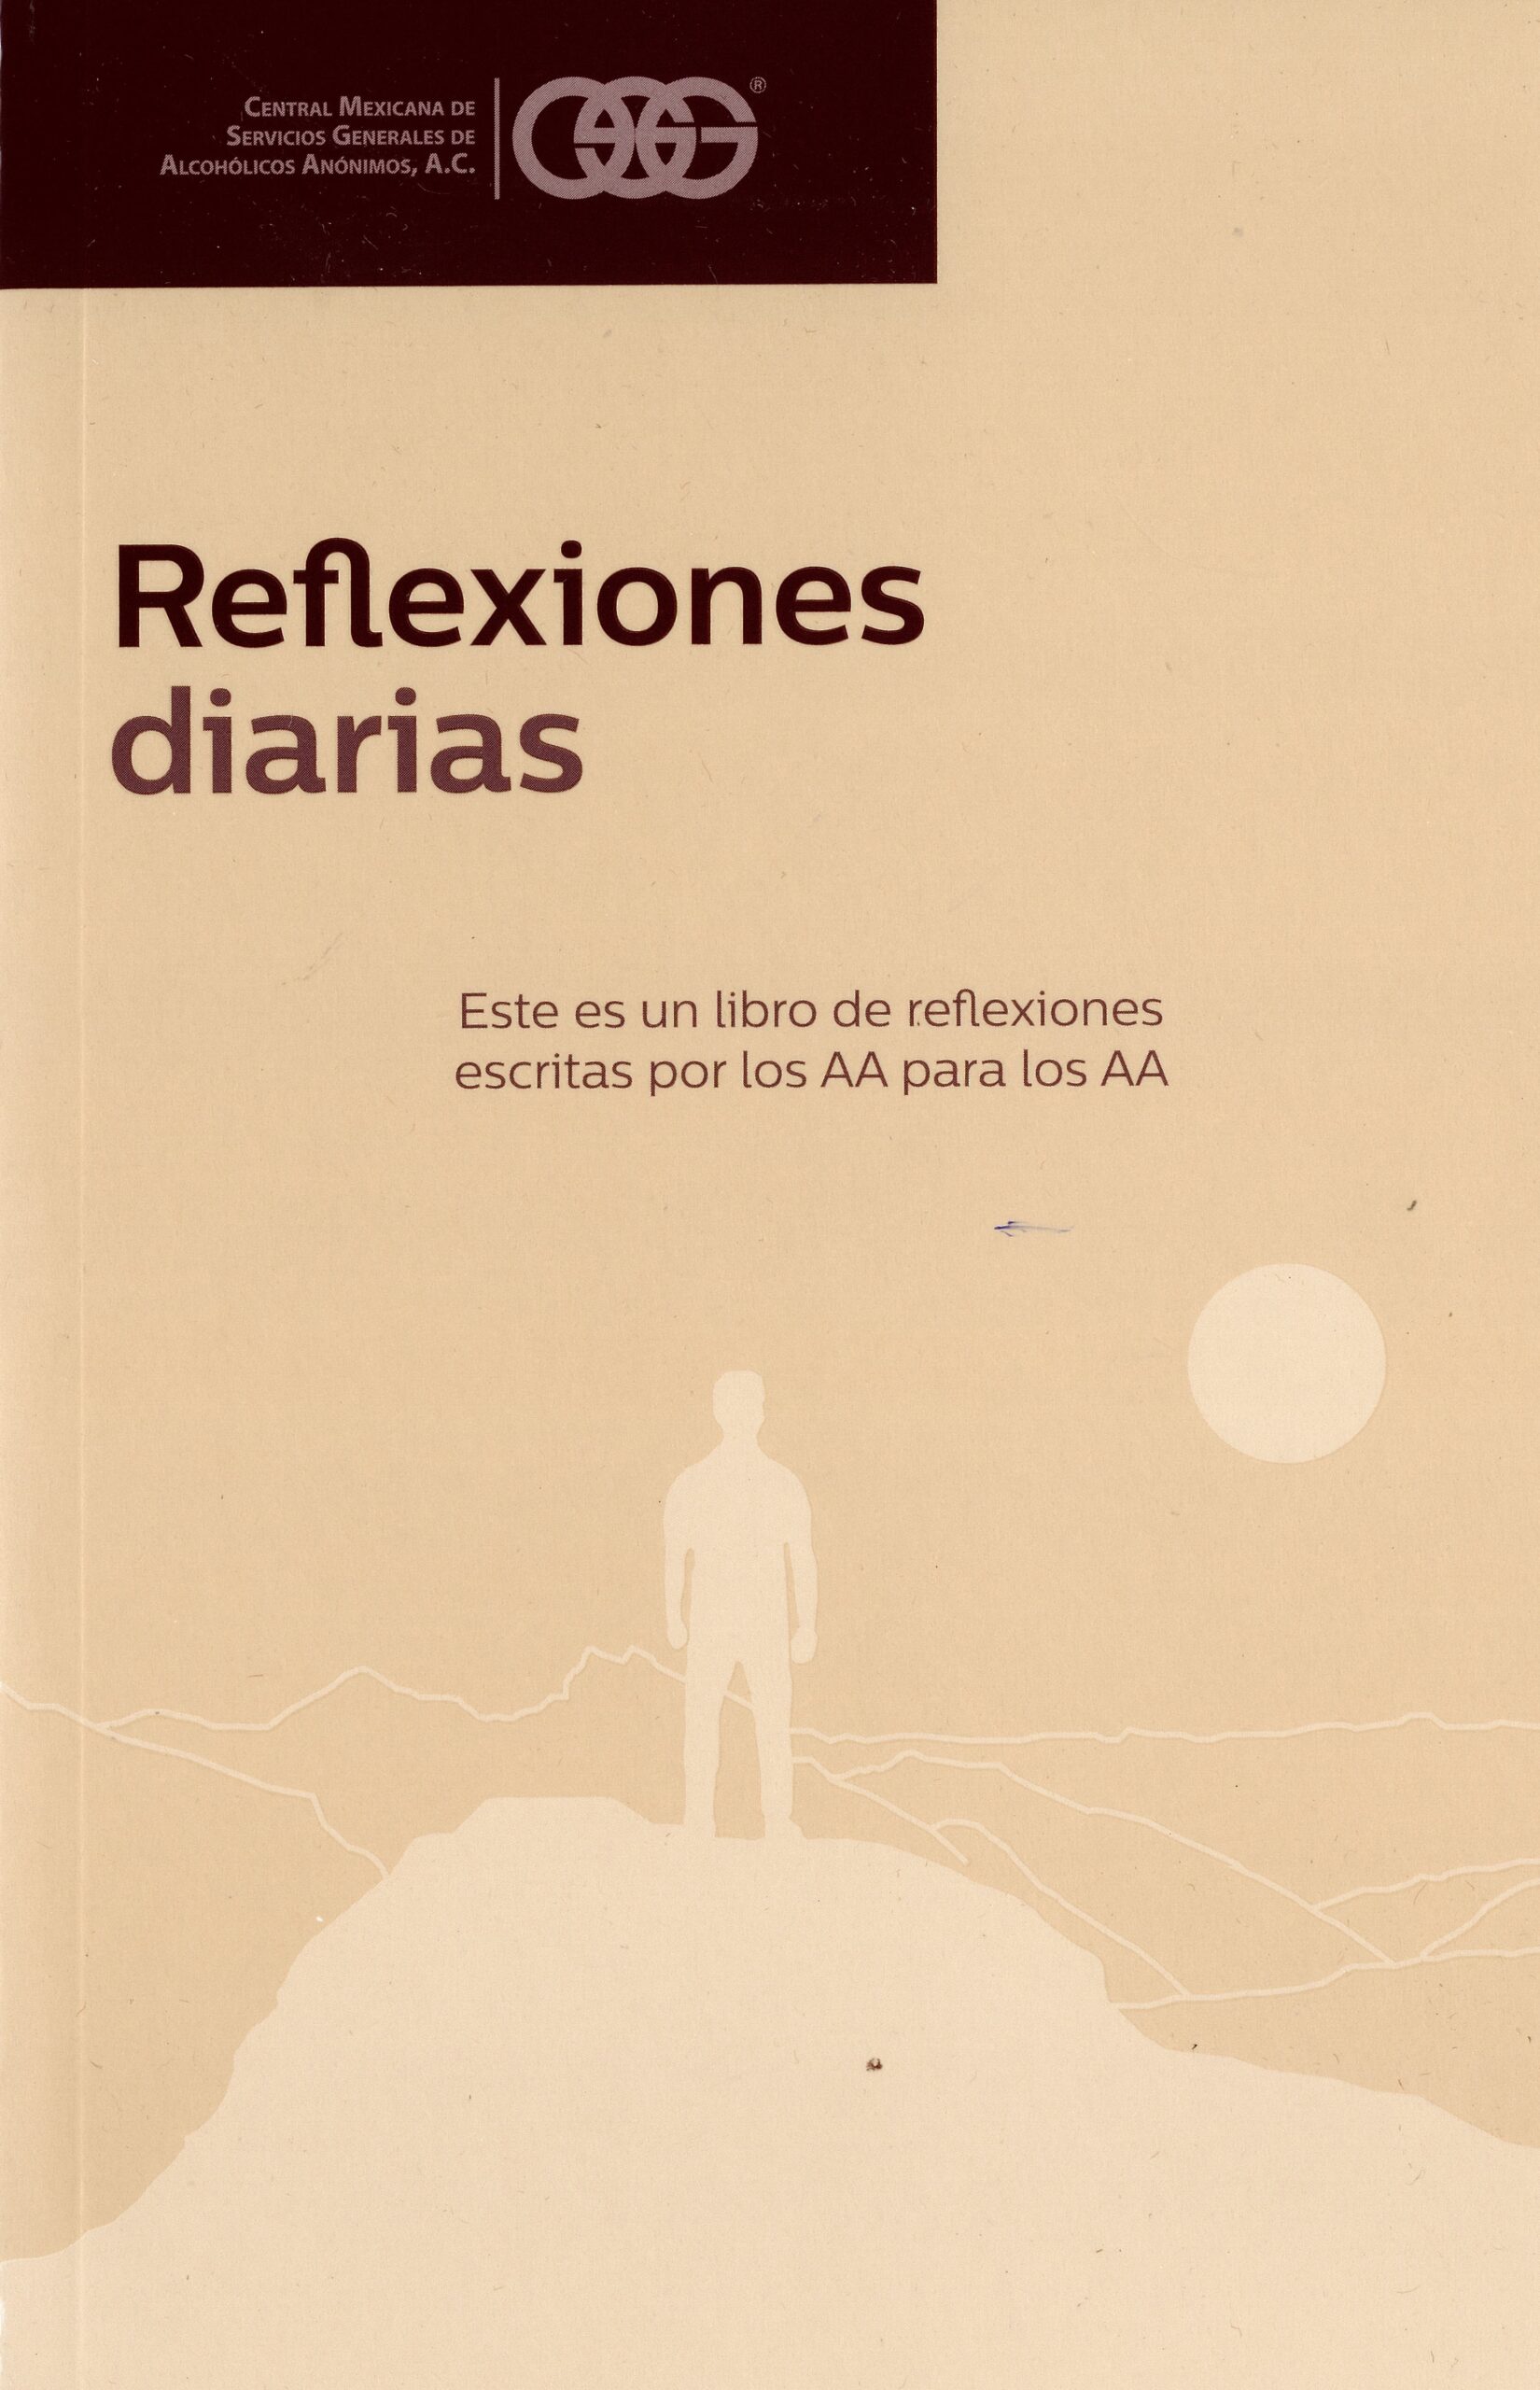 AAL016 Reflexiones Diarias - Neuróticos Anónimos